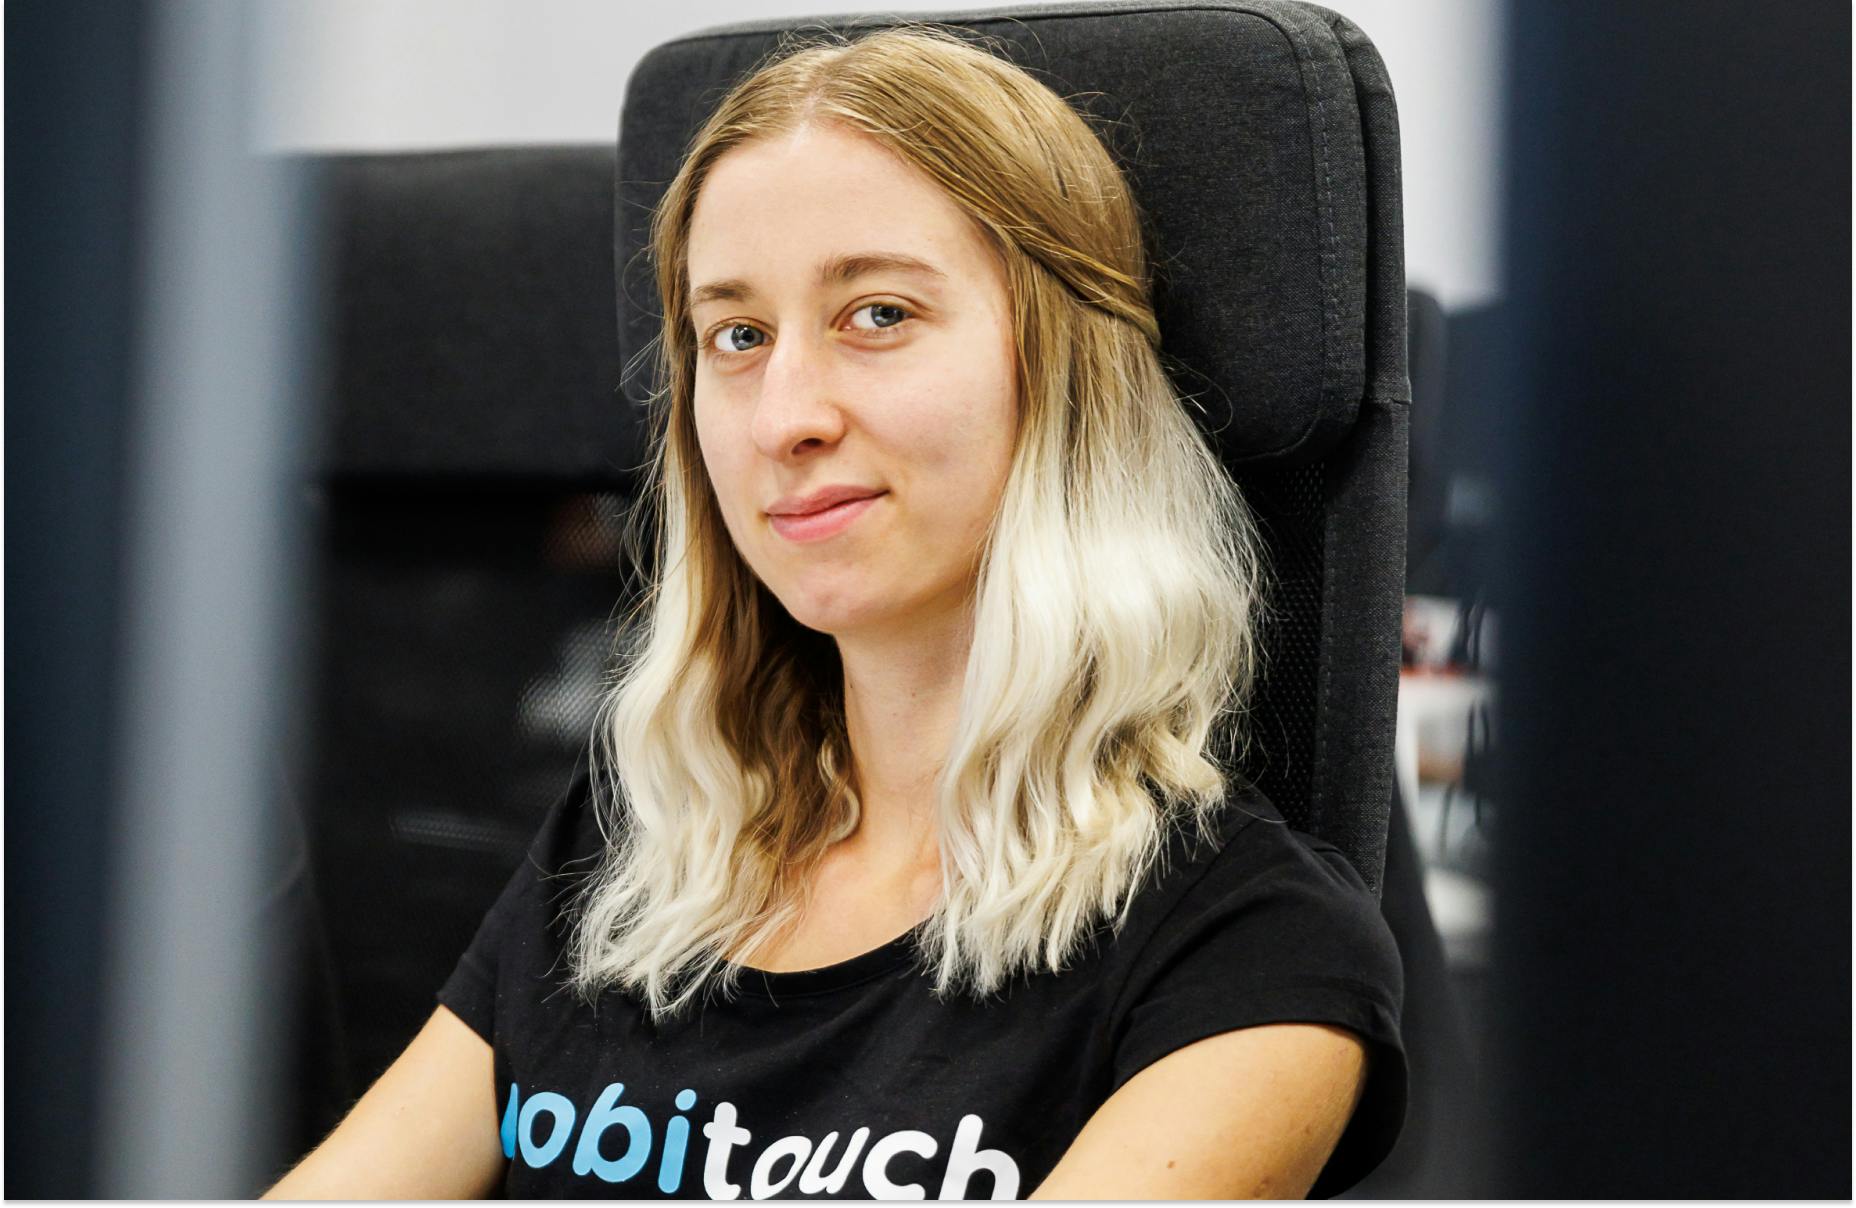 Kobieta, programistka, w blond włosach, z lekkim uśmiechem na twarzy, siedząca na krześle przez monitorem